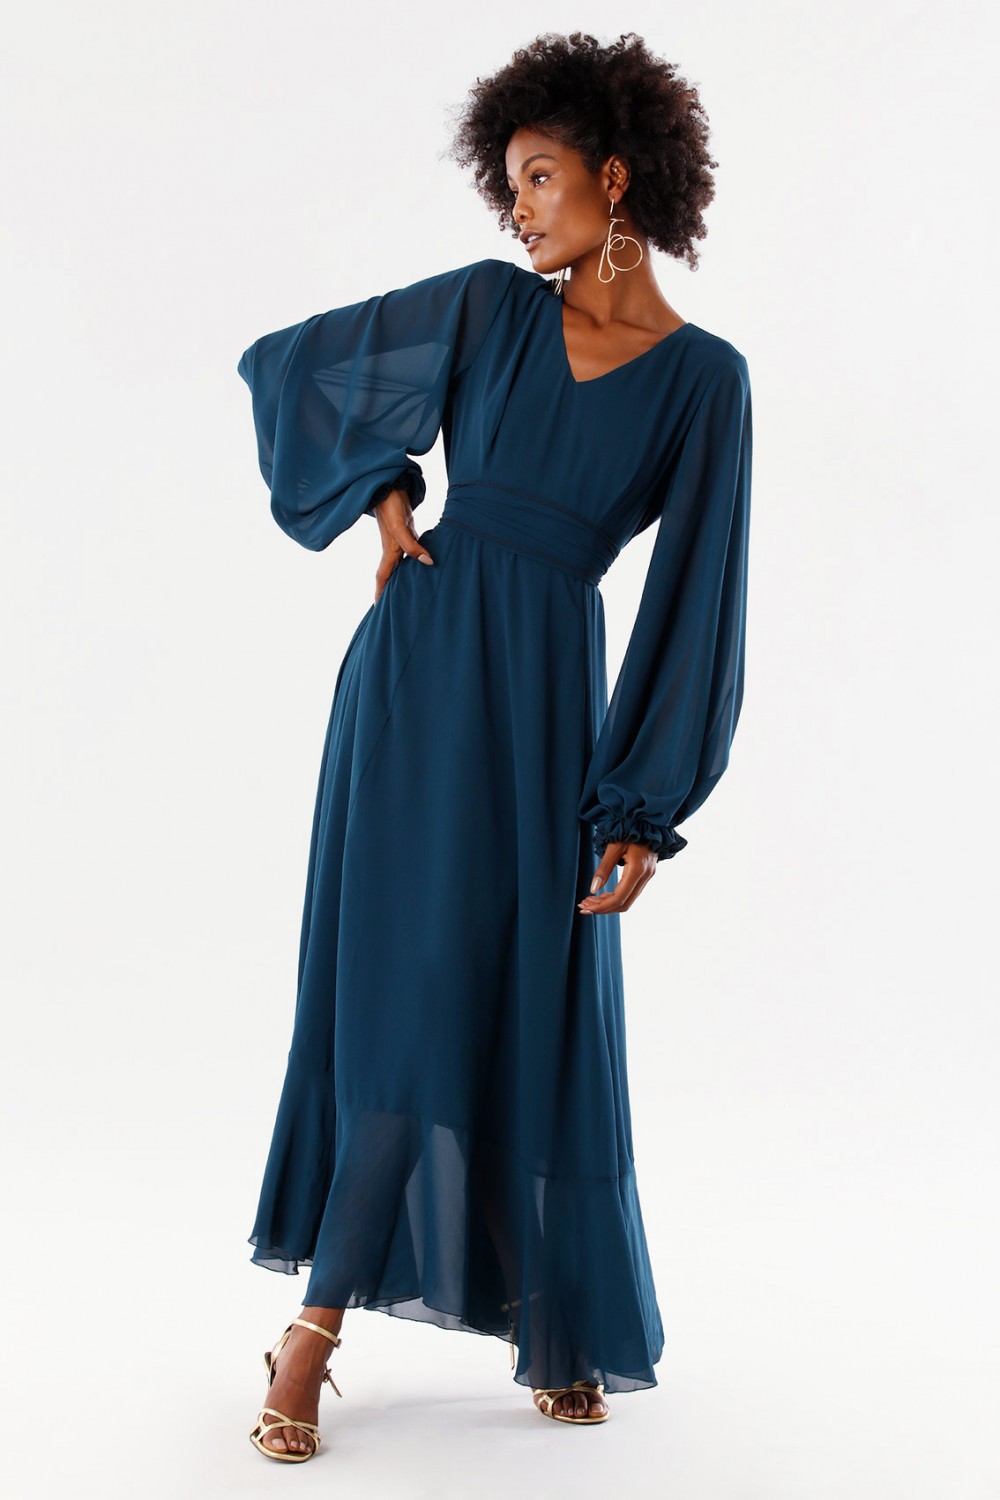 Teal dress in silk georgette